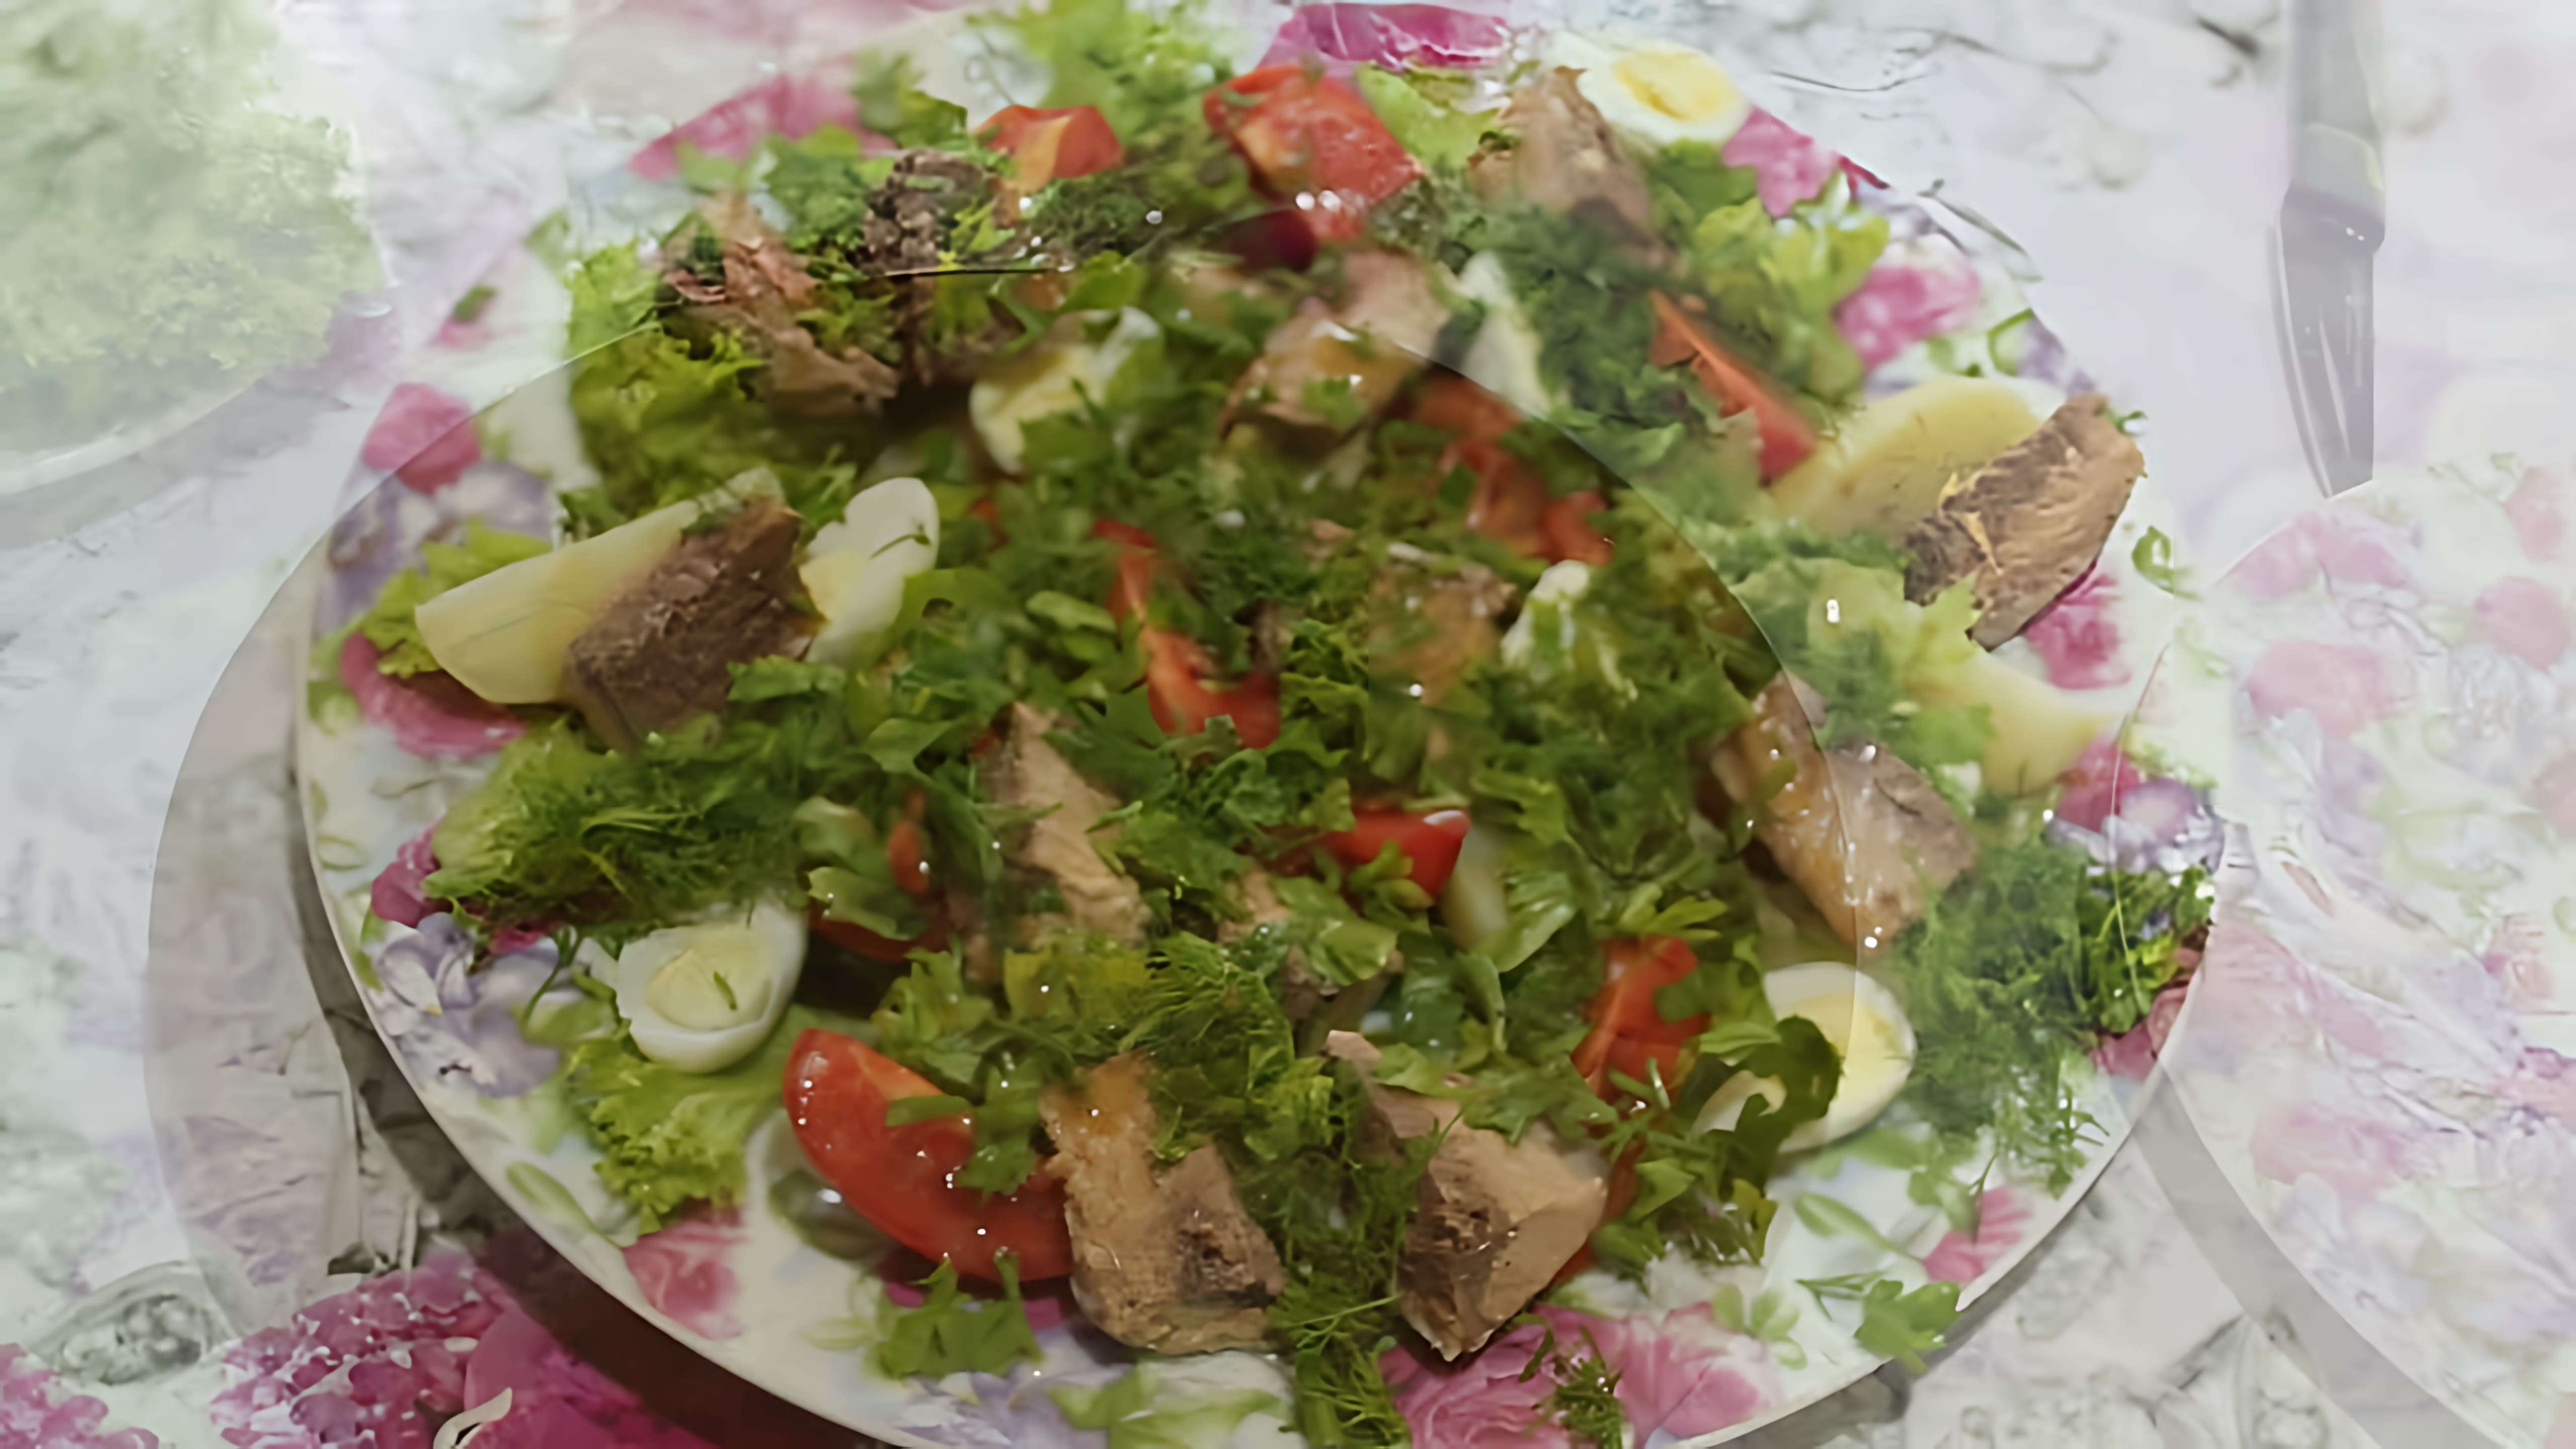 В этом видео демонстрируется процесс приготовления салата "Аля Нисуаз" с консервированным тунцом